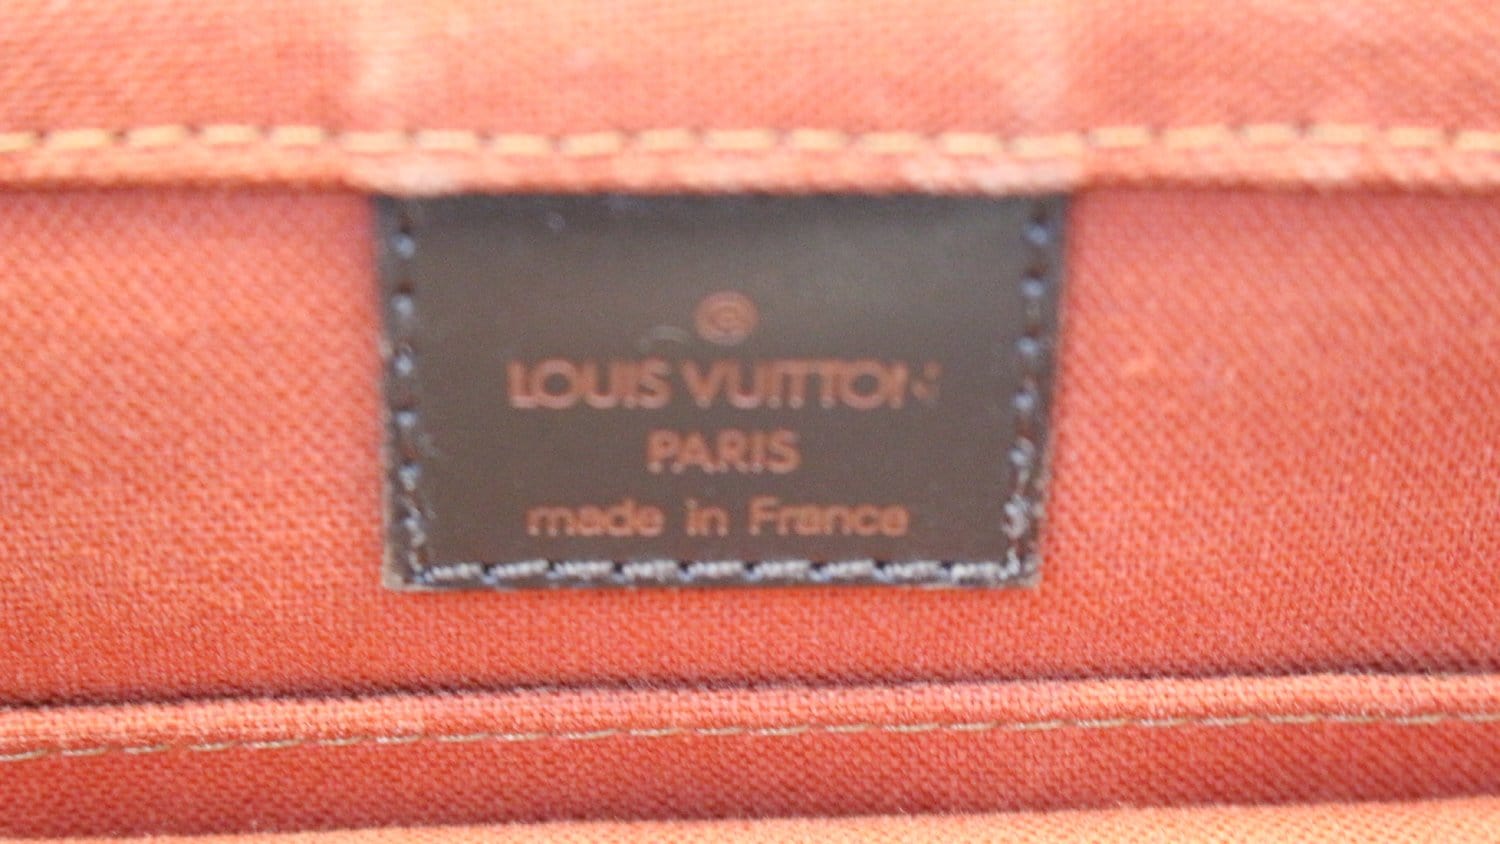 Louis Vuitton Damier Ebene Bastille Messenger Bag – Italy Station